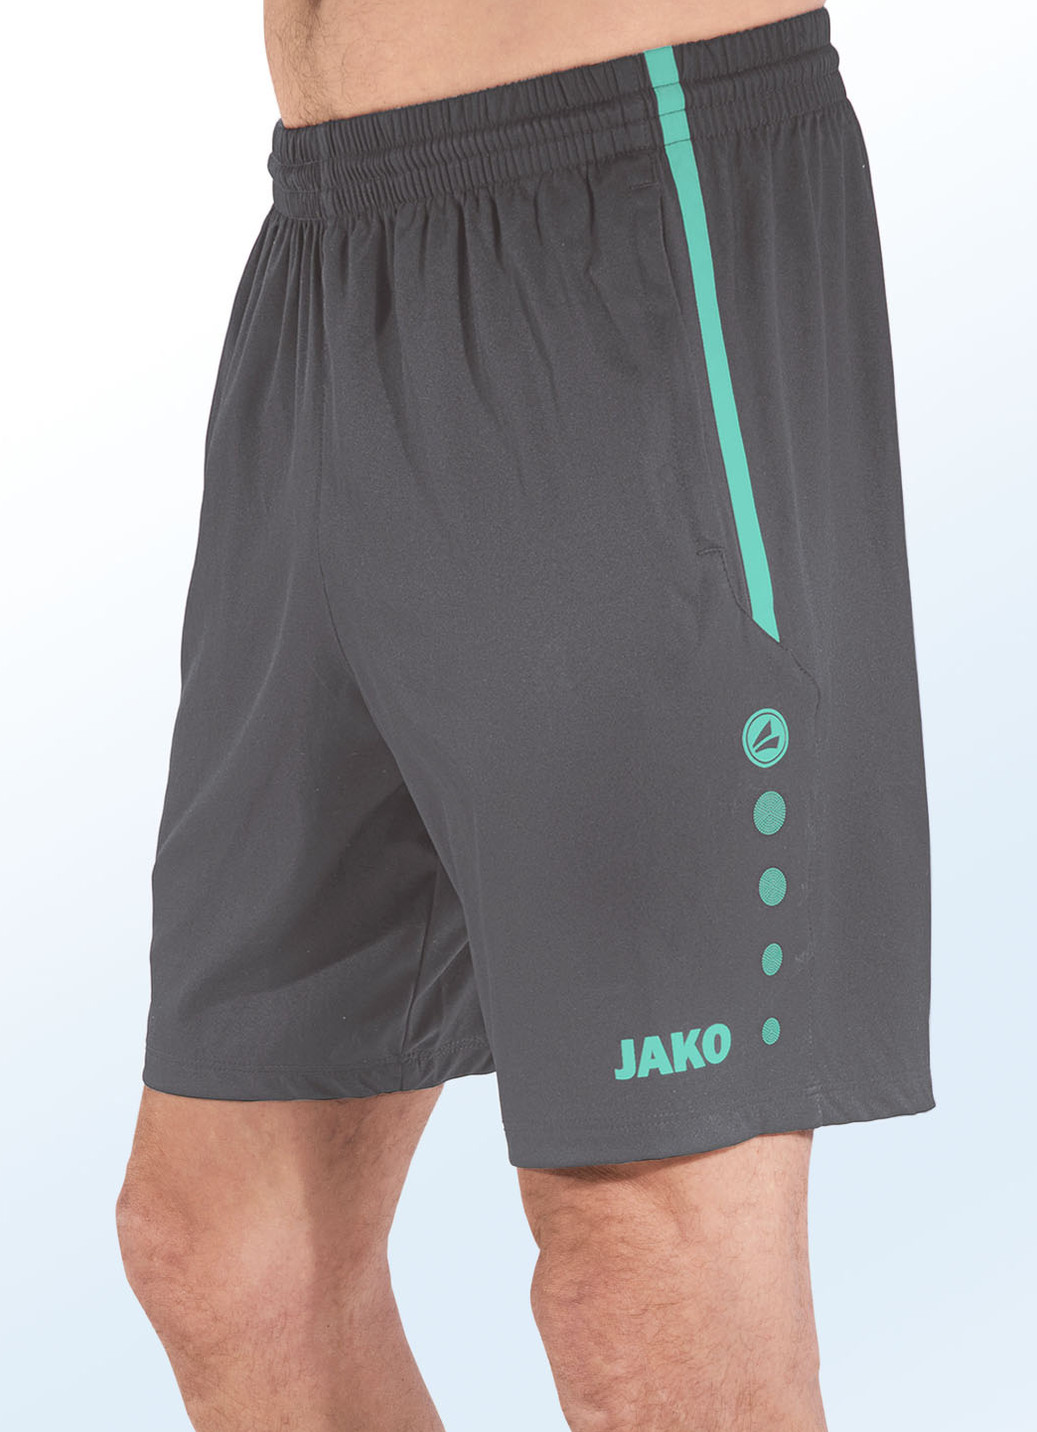 Shorts von "Jako" in 4 Farben, Größe XL (52/54), Grau-Grün von Jako